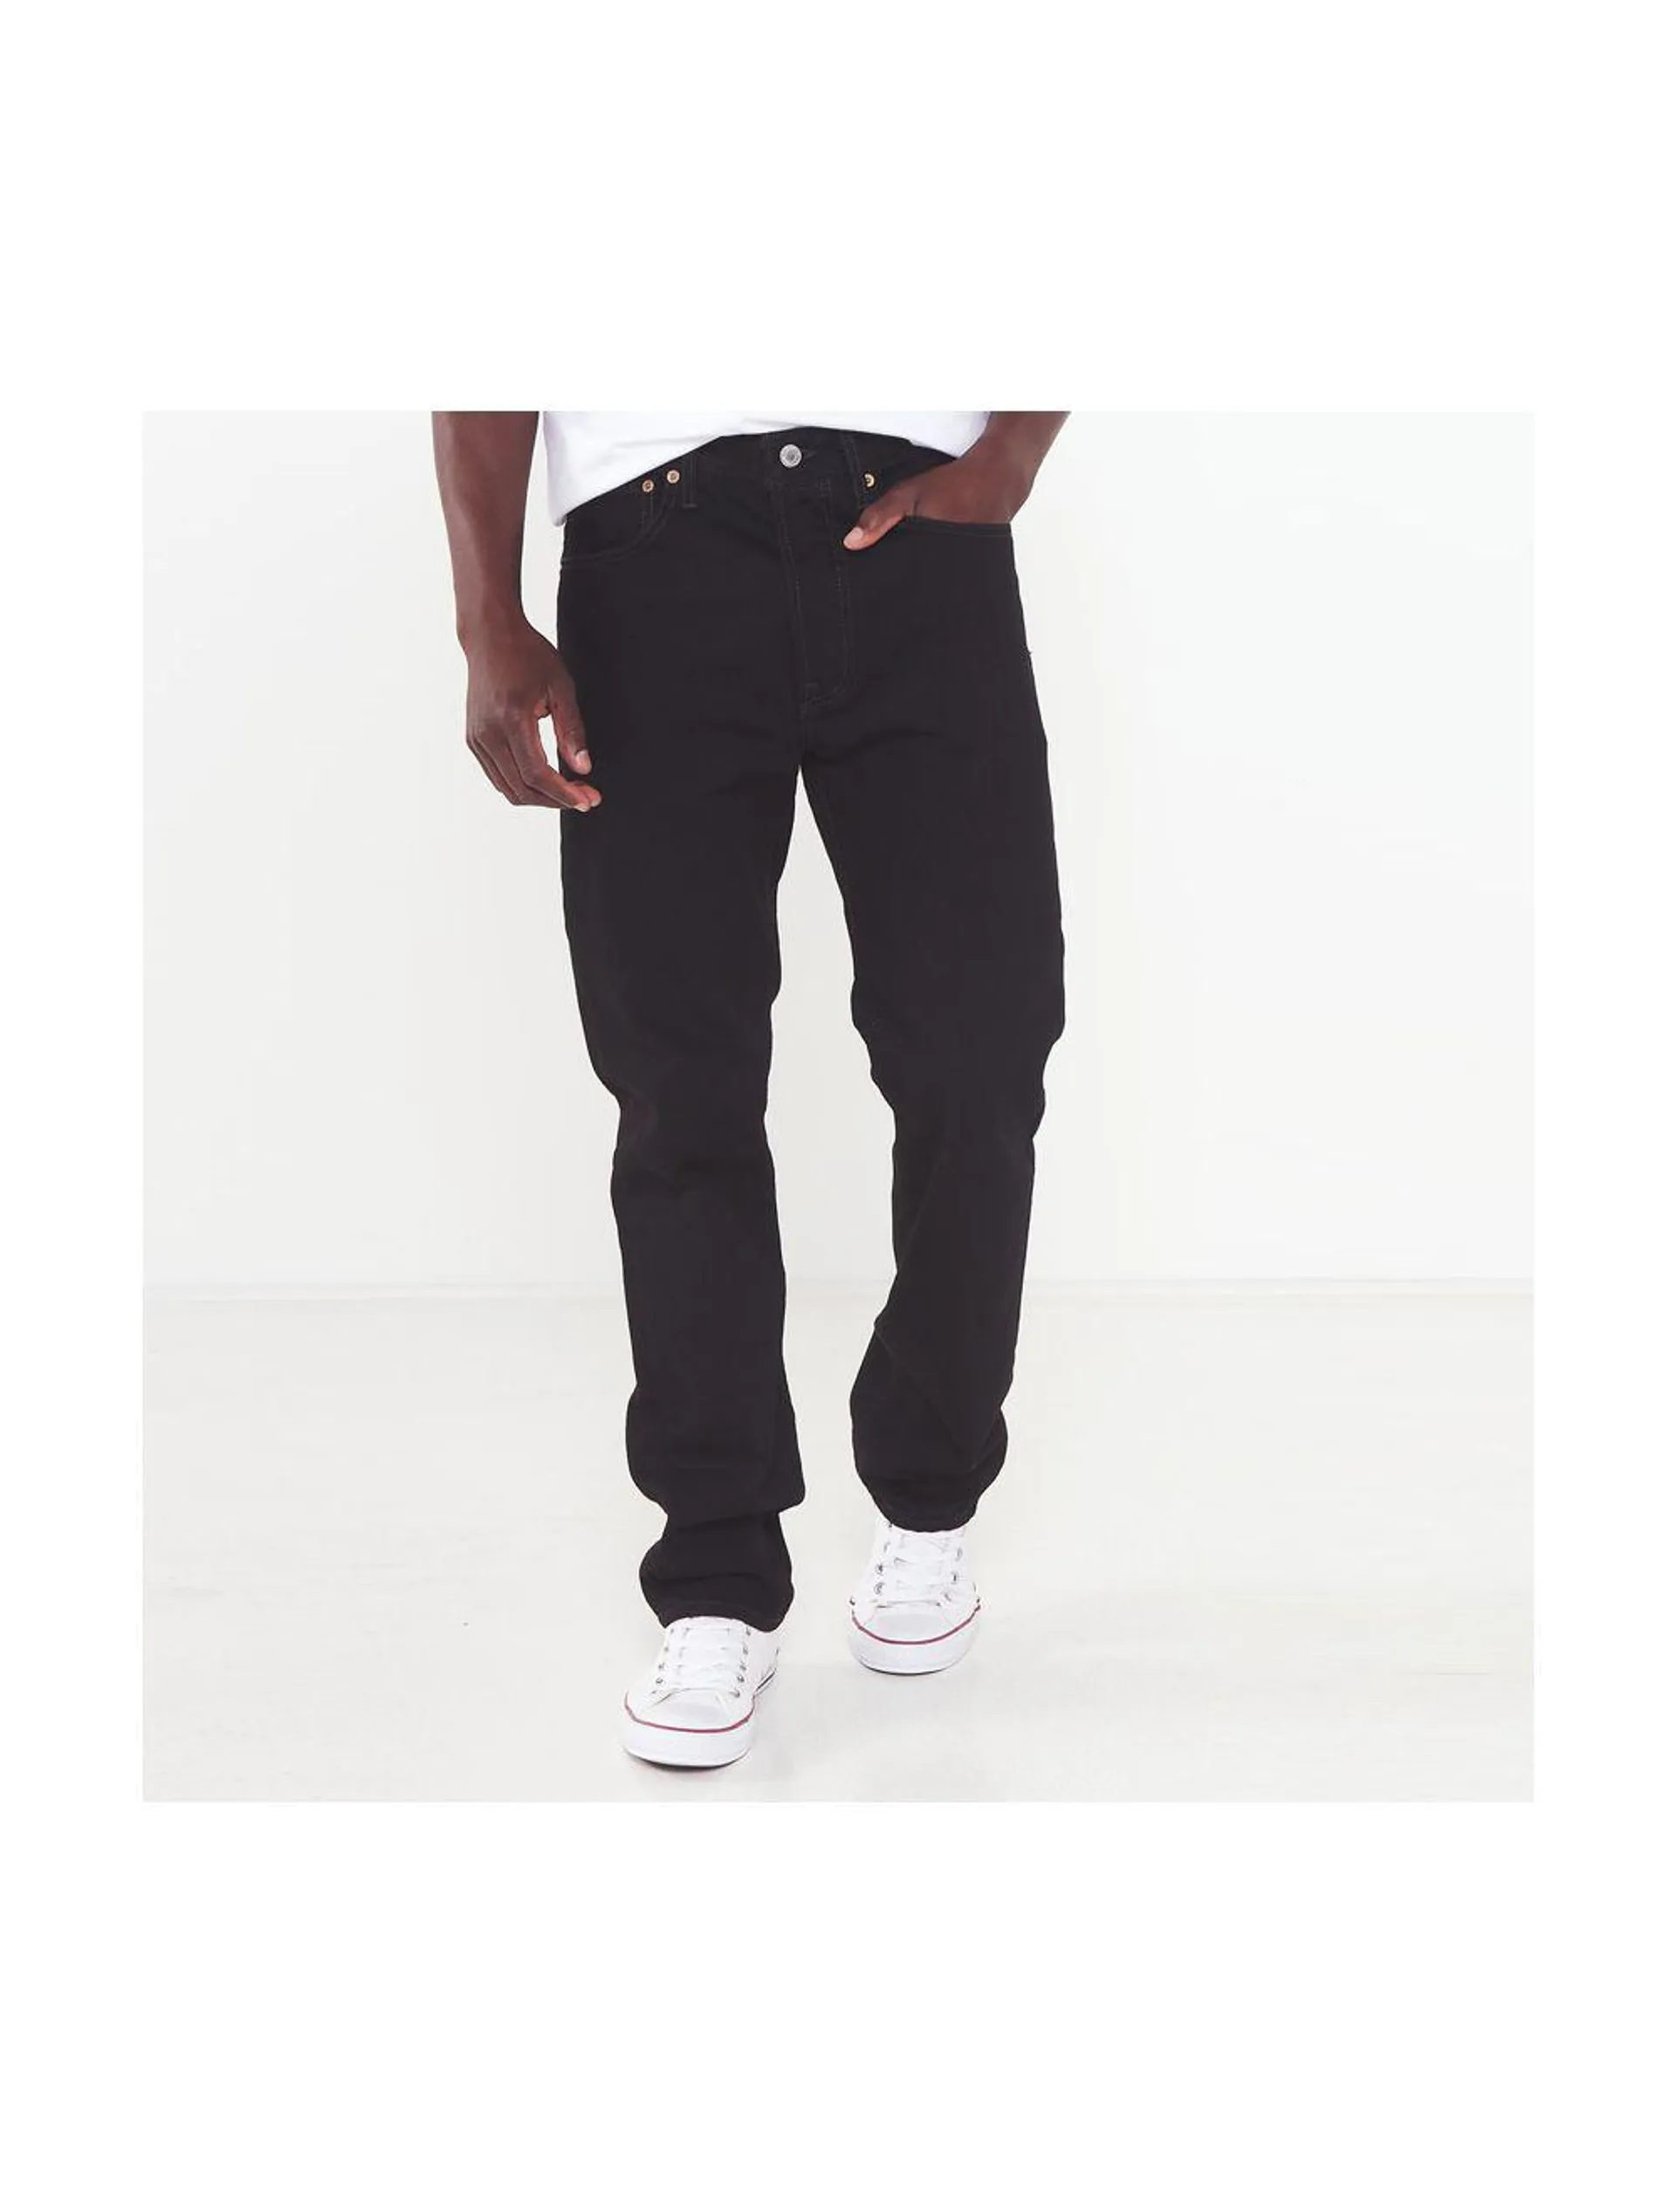 Levi's 501 Original Fit Jeans Mens Black